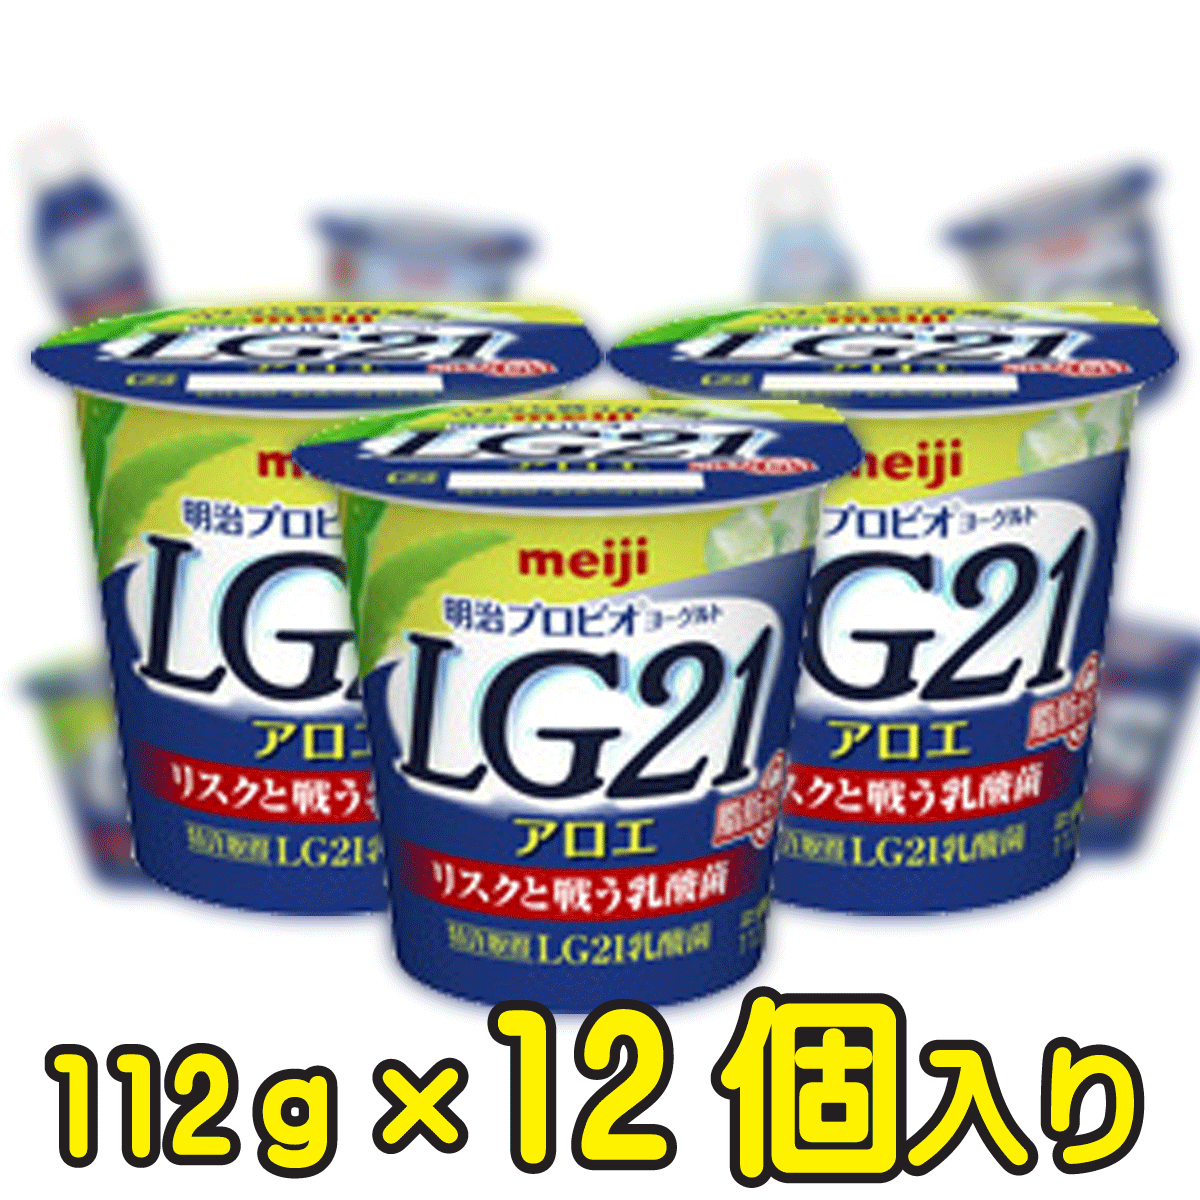 明治プロビオヨーグルトLG21 アロエ脂肪0（ゼロ）【112g×12個入り】